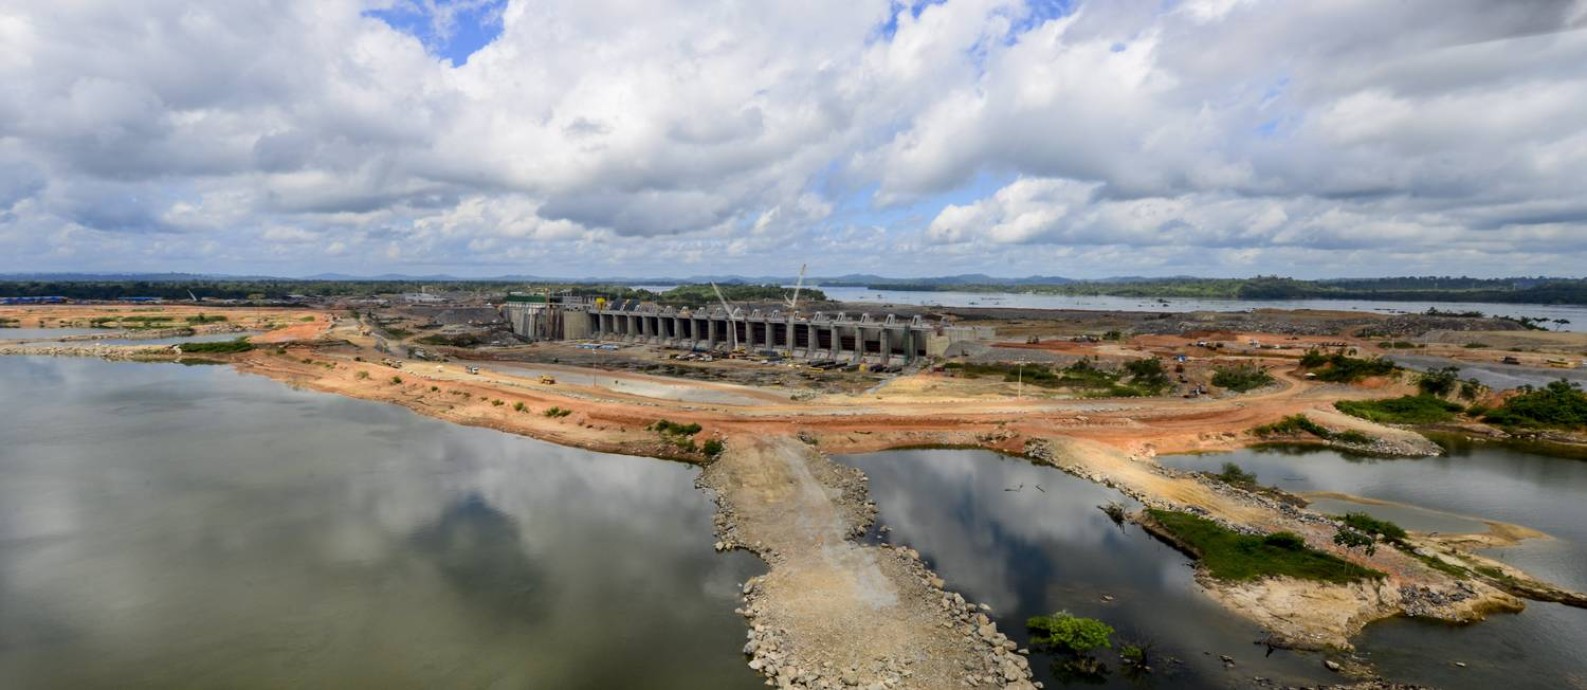 Usina Hidrelétrica de Belo Monte, no Pará, é tida como extremamente vulnerável às mudanças climáticas, diz especialista Foto: Divulgação